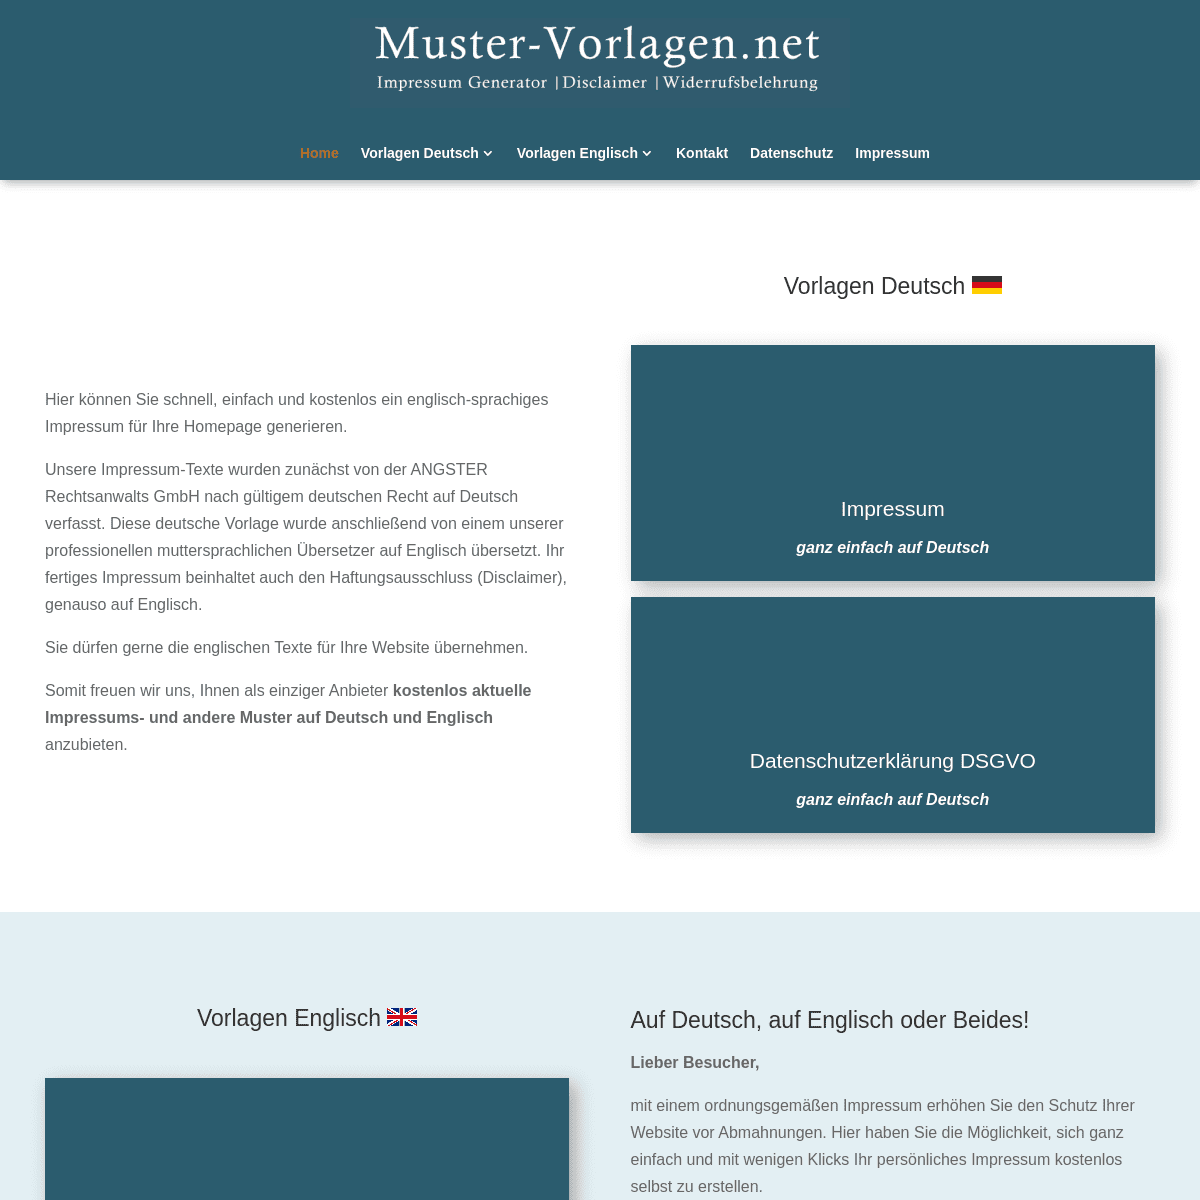 A complete backup of https://muster-vorlagen.net